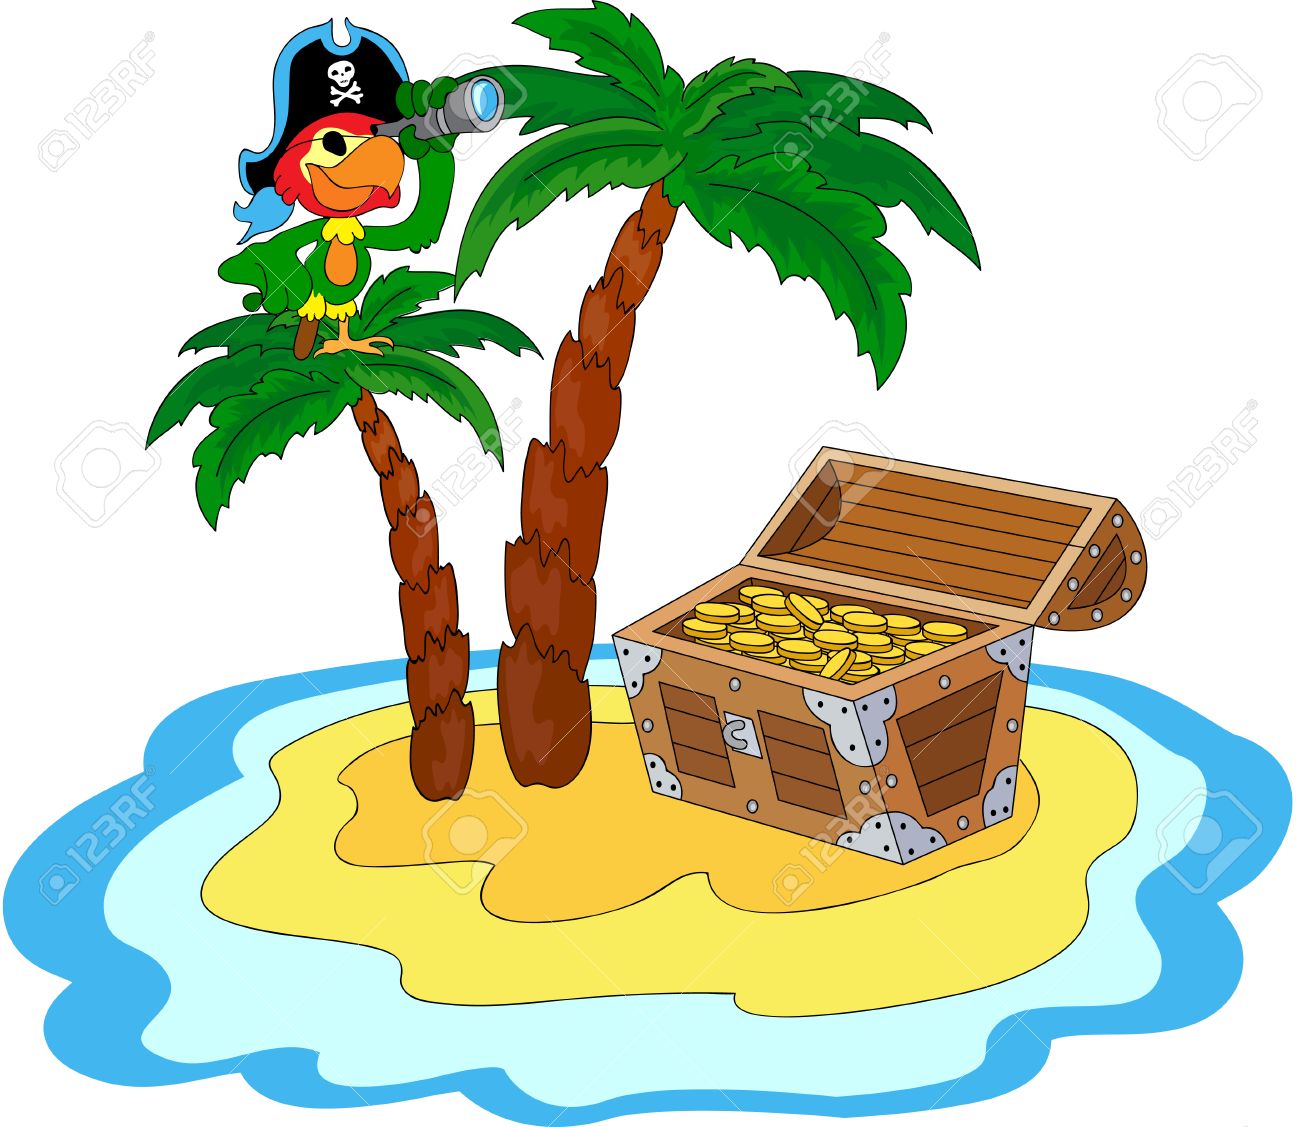 Treasure chest pirate.